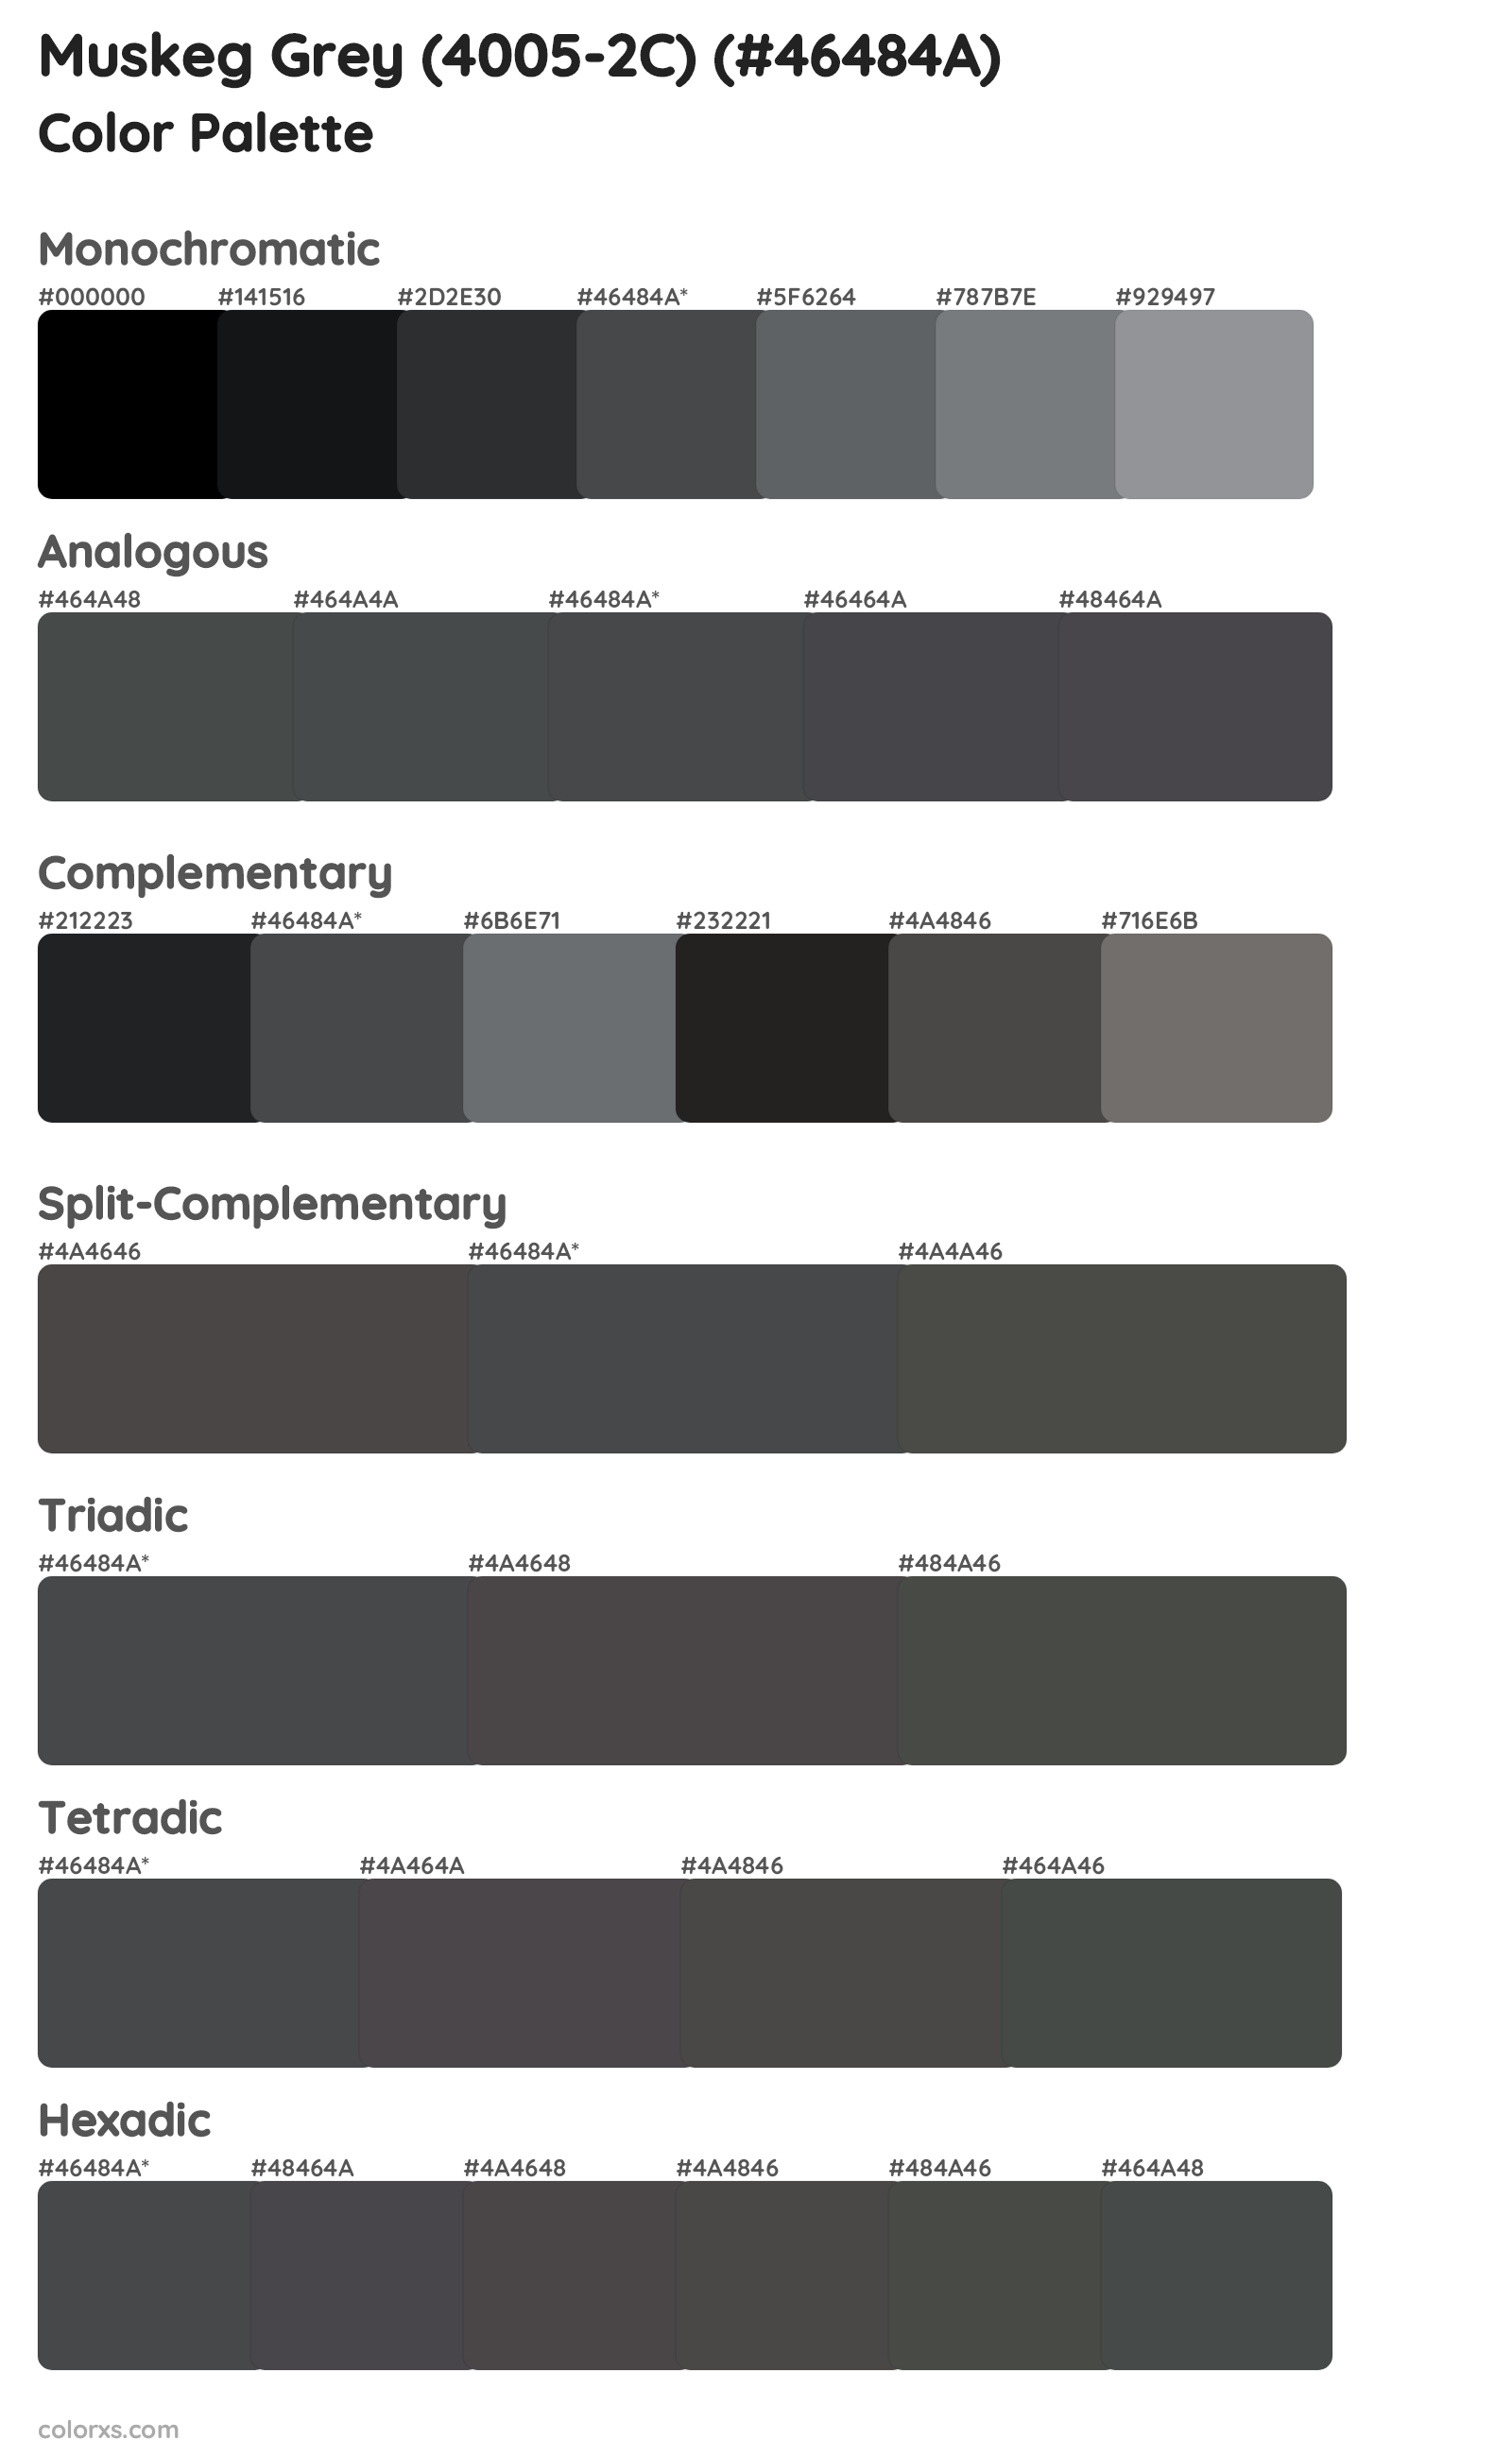 Muskeg Grey (4005-2C) Color Scheme Palettes